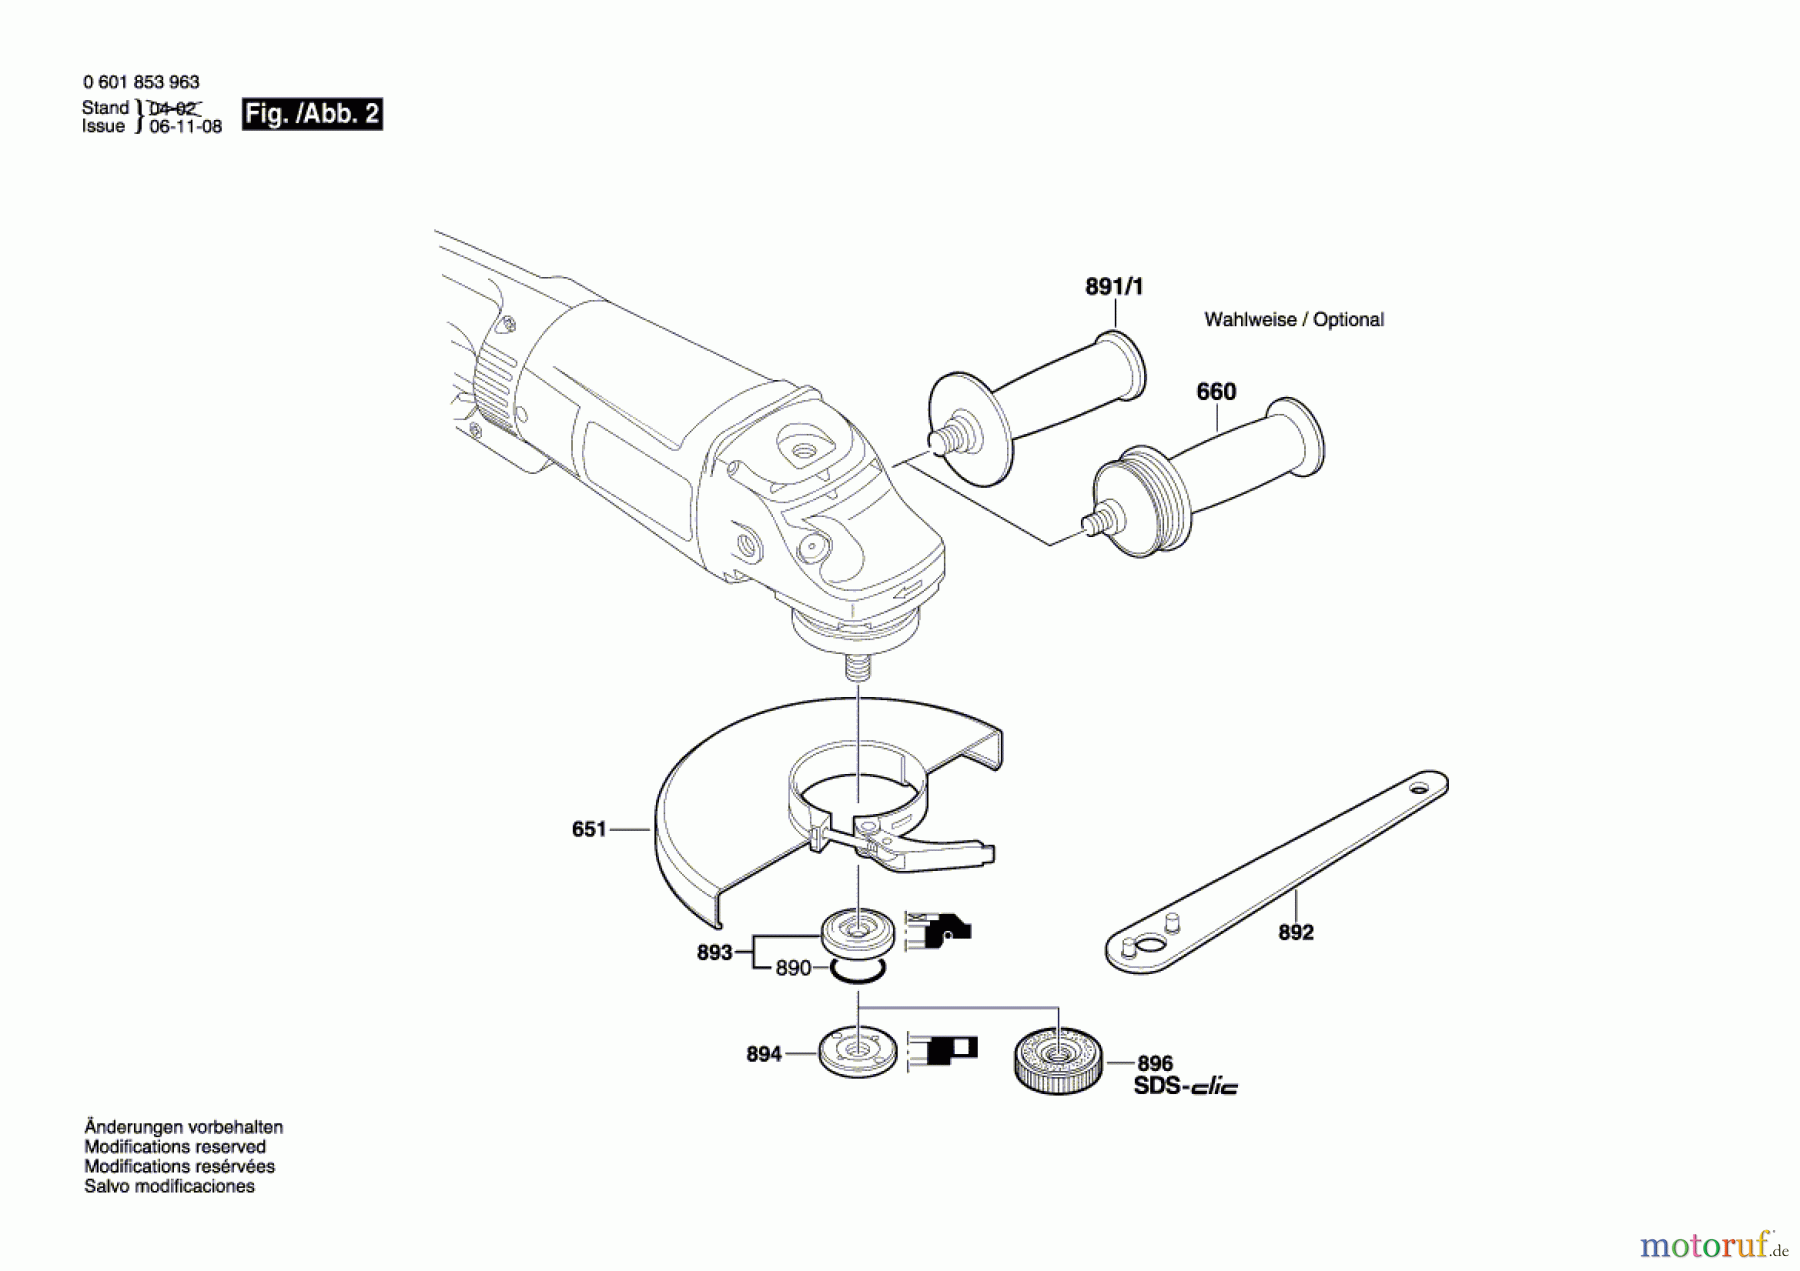  Bosch Werkzeug Winkelschleifer BTI-WKS 180 E Seite 2